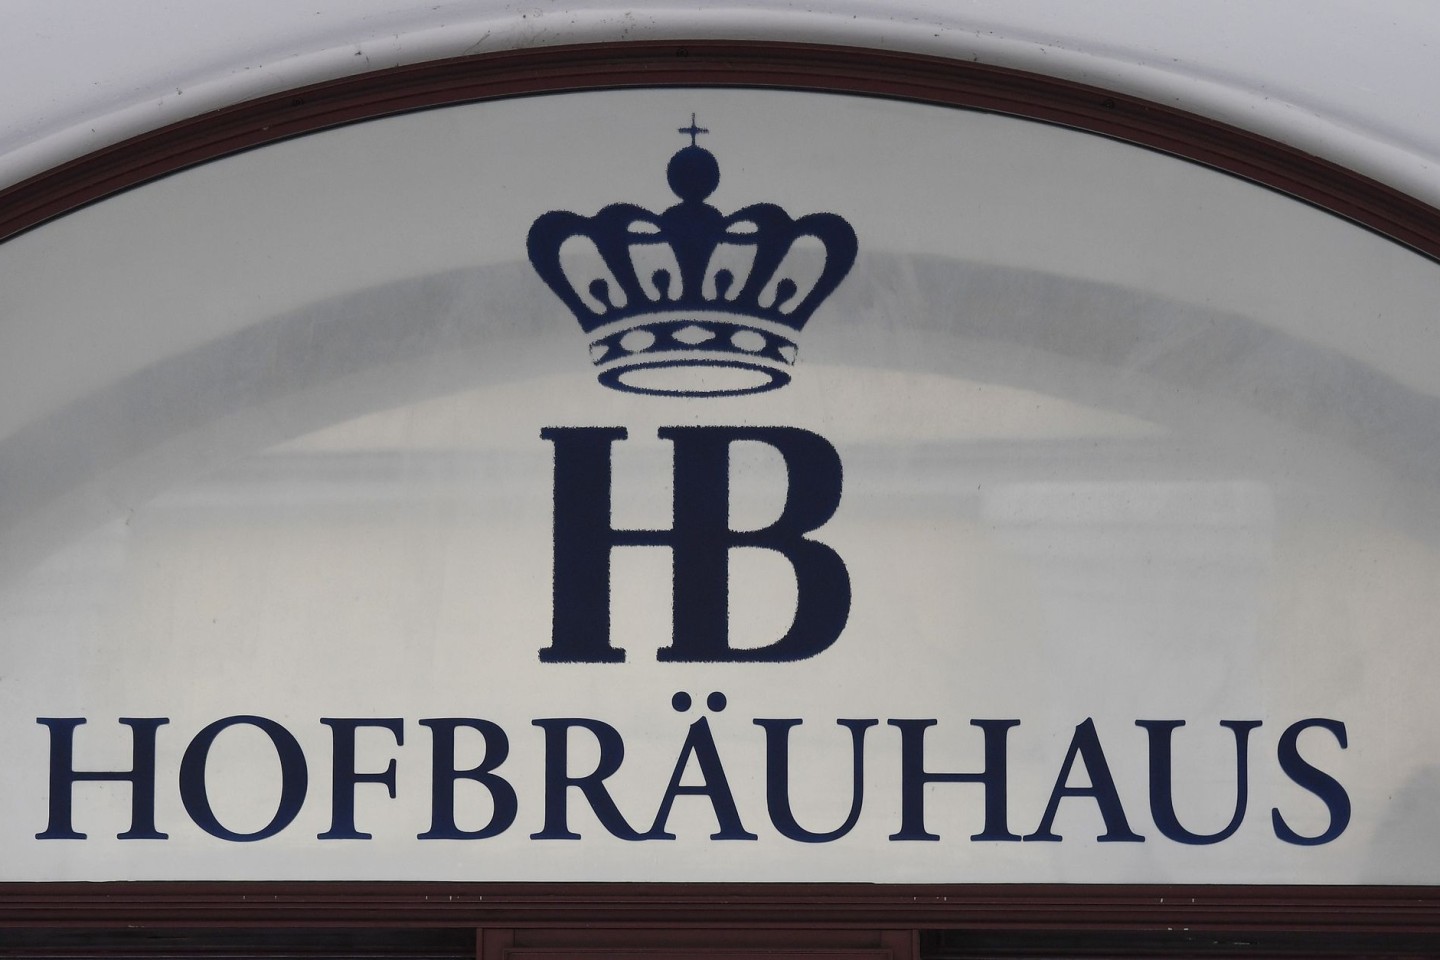 Das Staatliche Hofbräuhaus München liefert sich einen Rechtsstreit mit dem Hofbrauhaus Aktienbrauerei und Malzfrabrik zu Dresden.